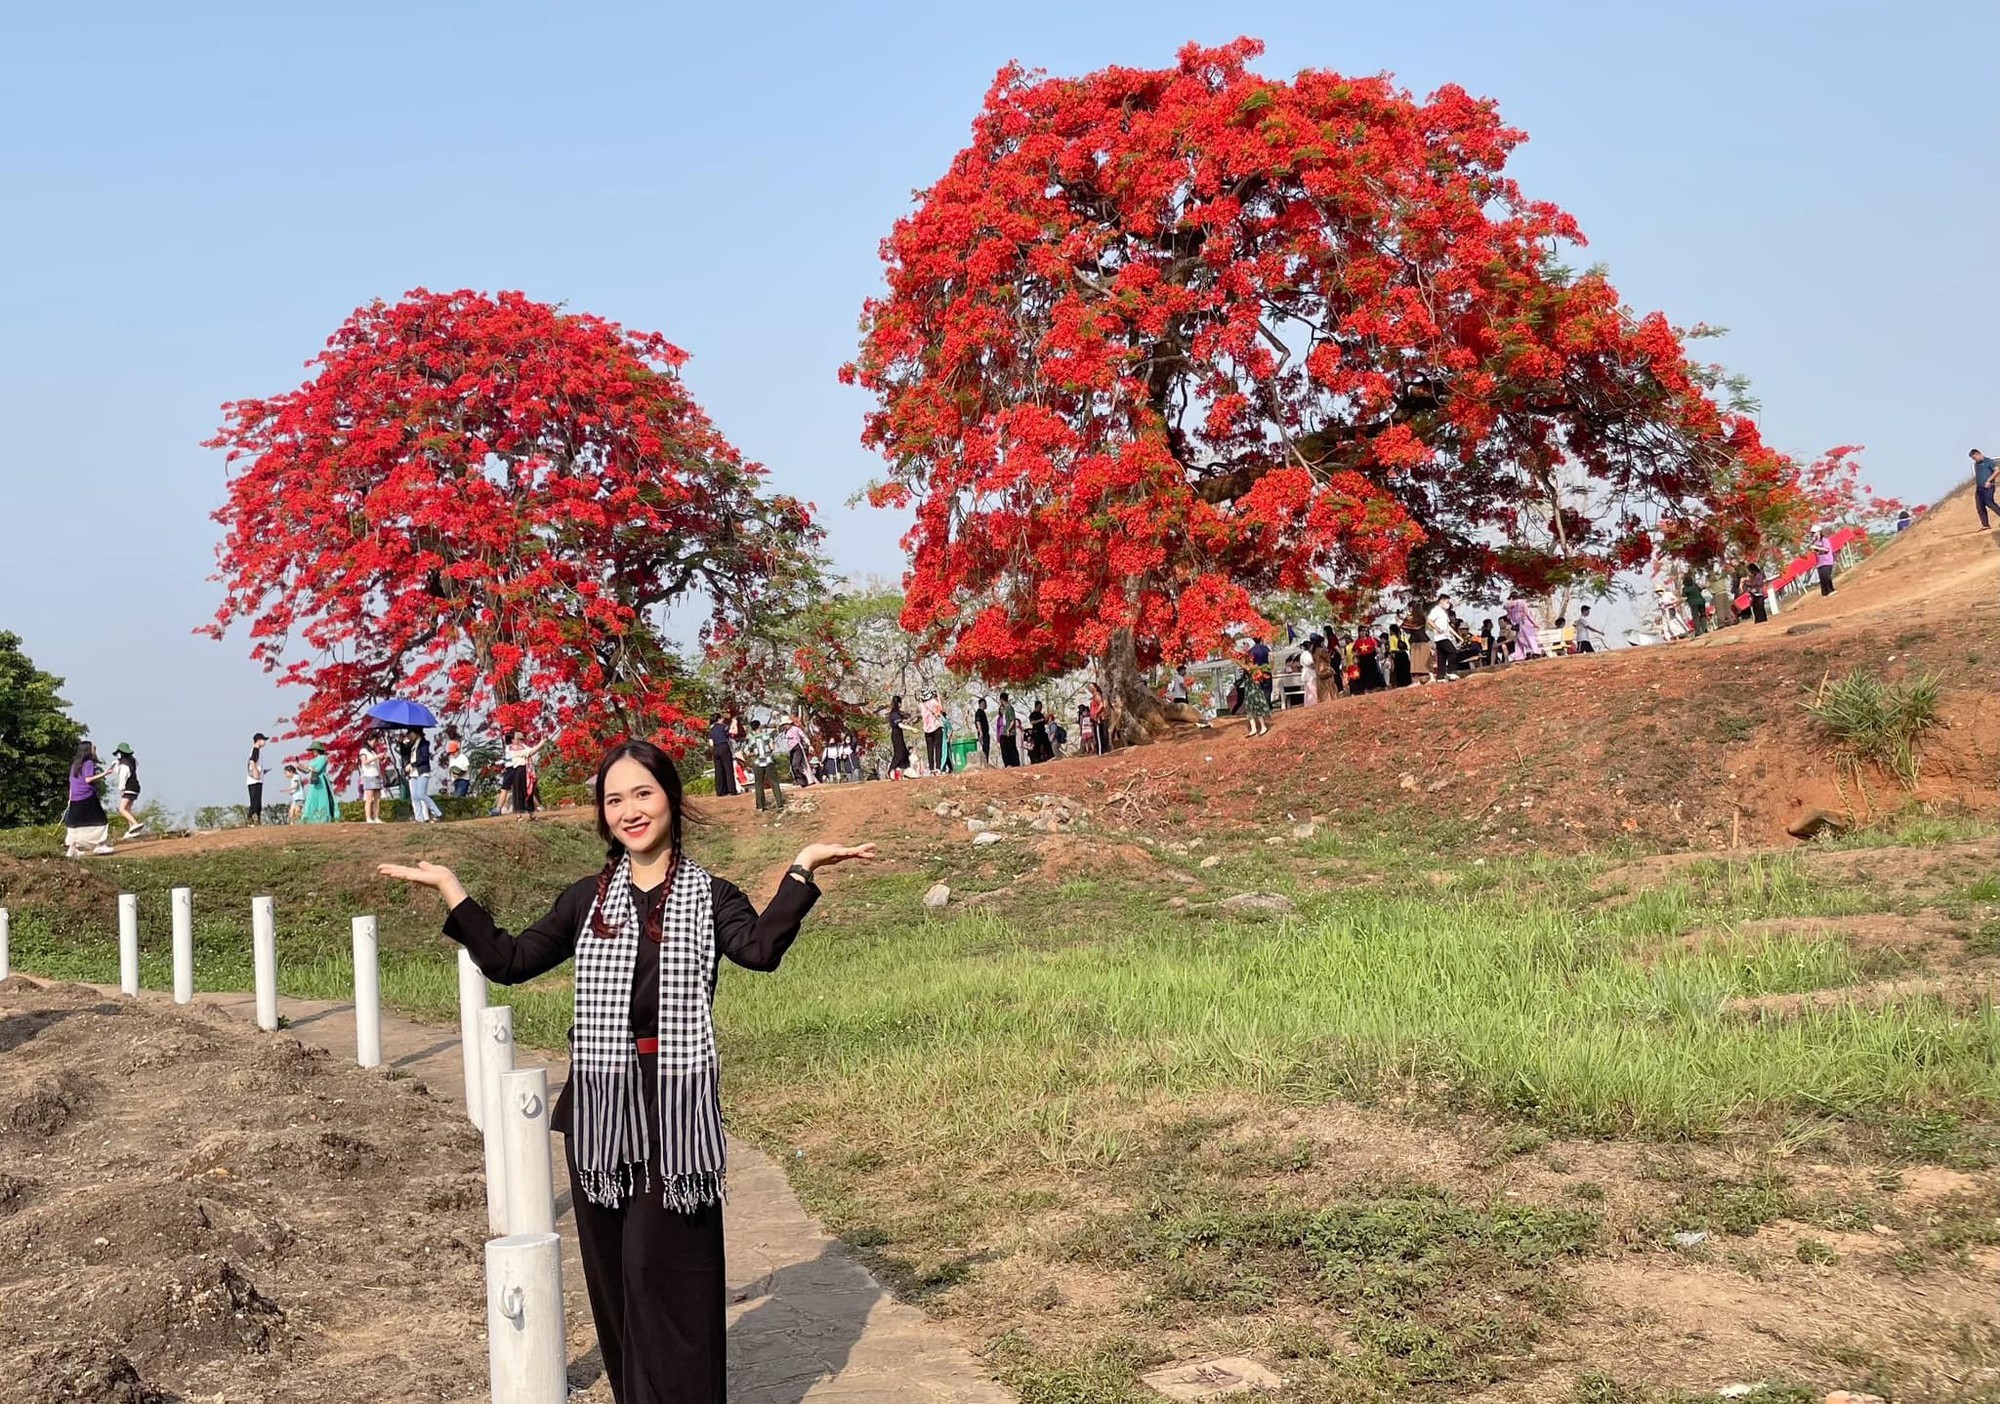 Hai cây phượng ra hoa đỏ rực vào đúng dịp kỷ niệm 70 năm chiến thắng Điện Biên Phủ